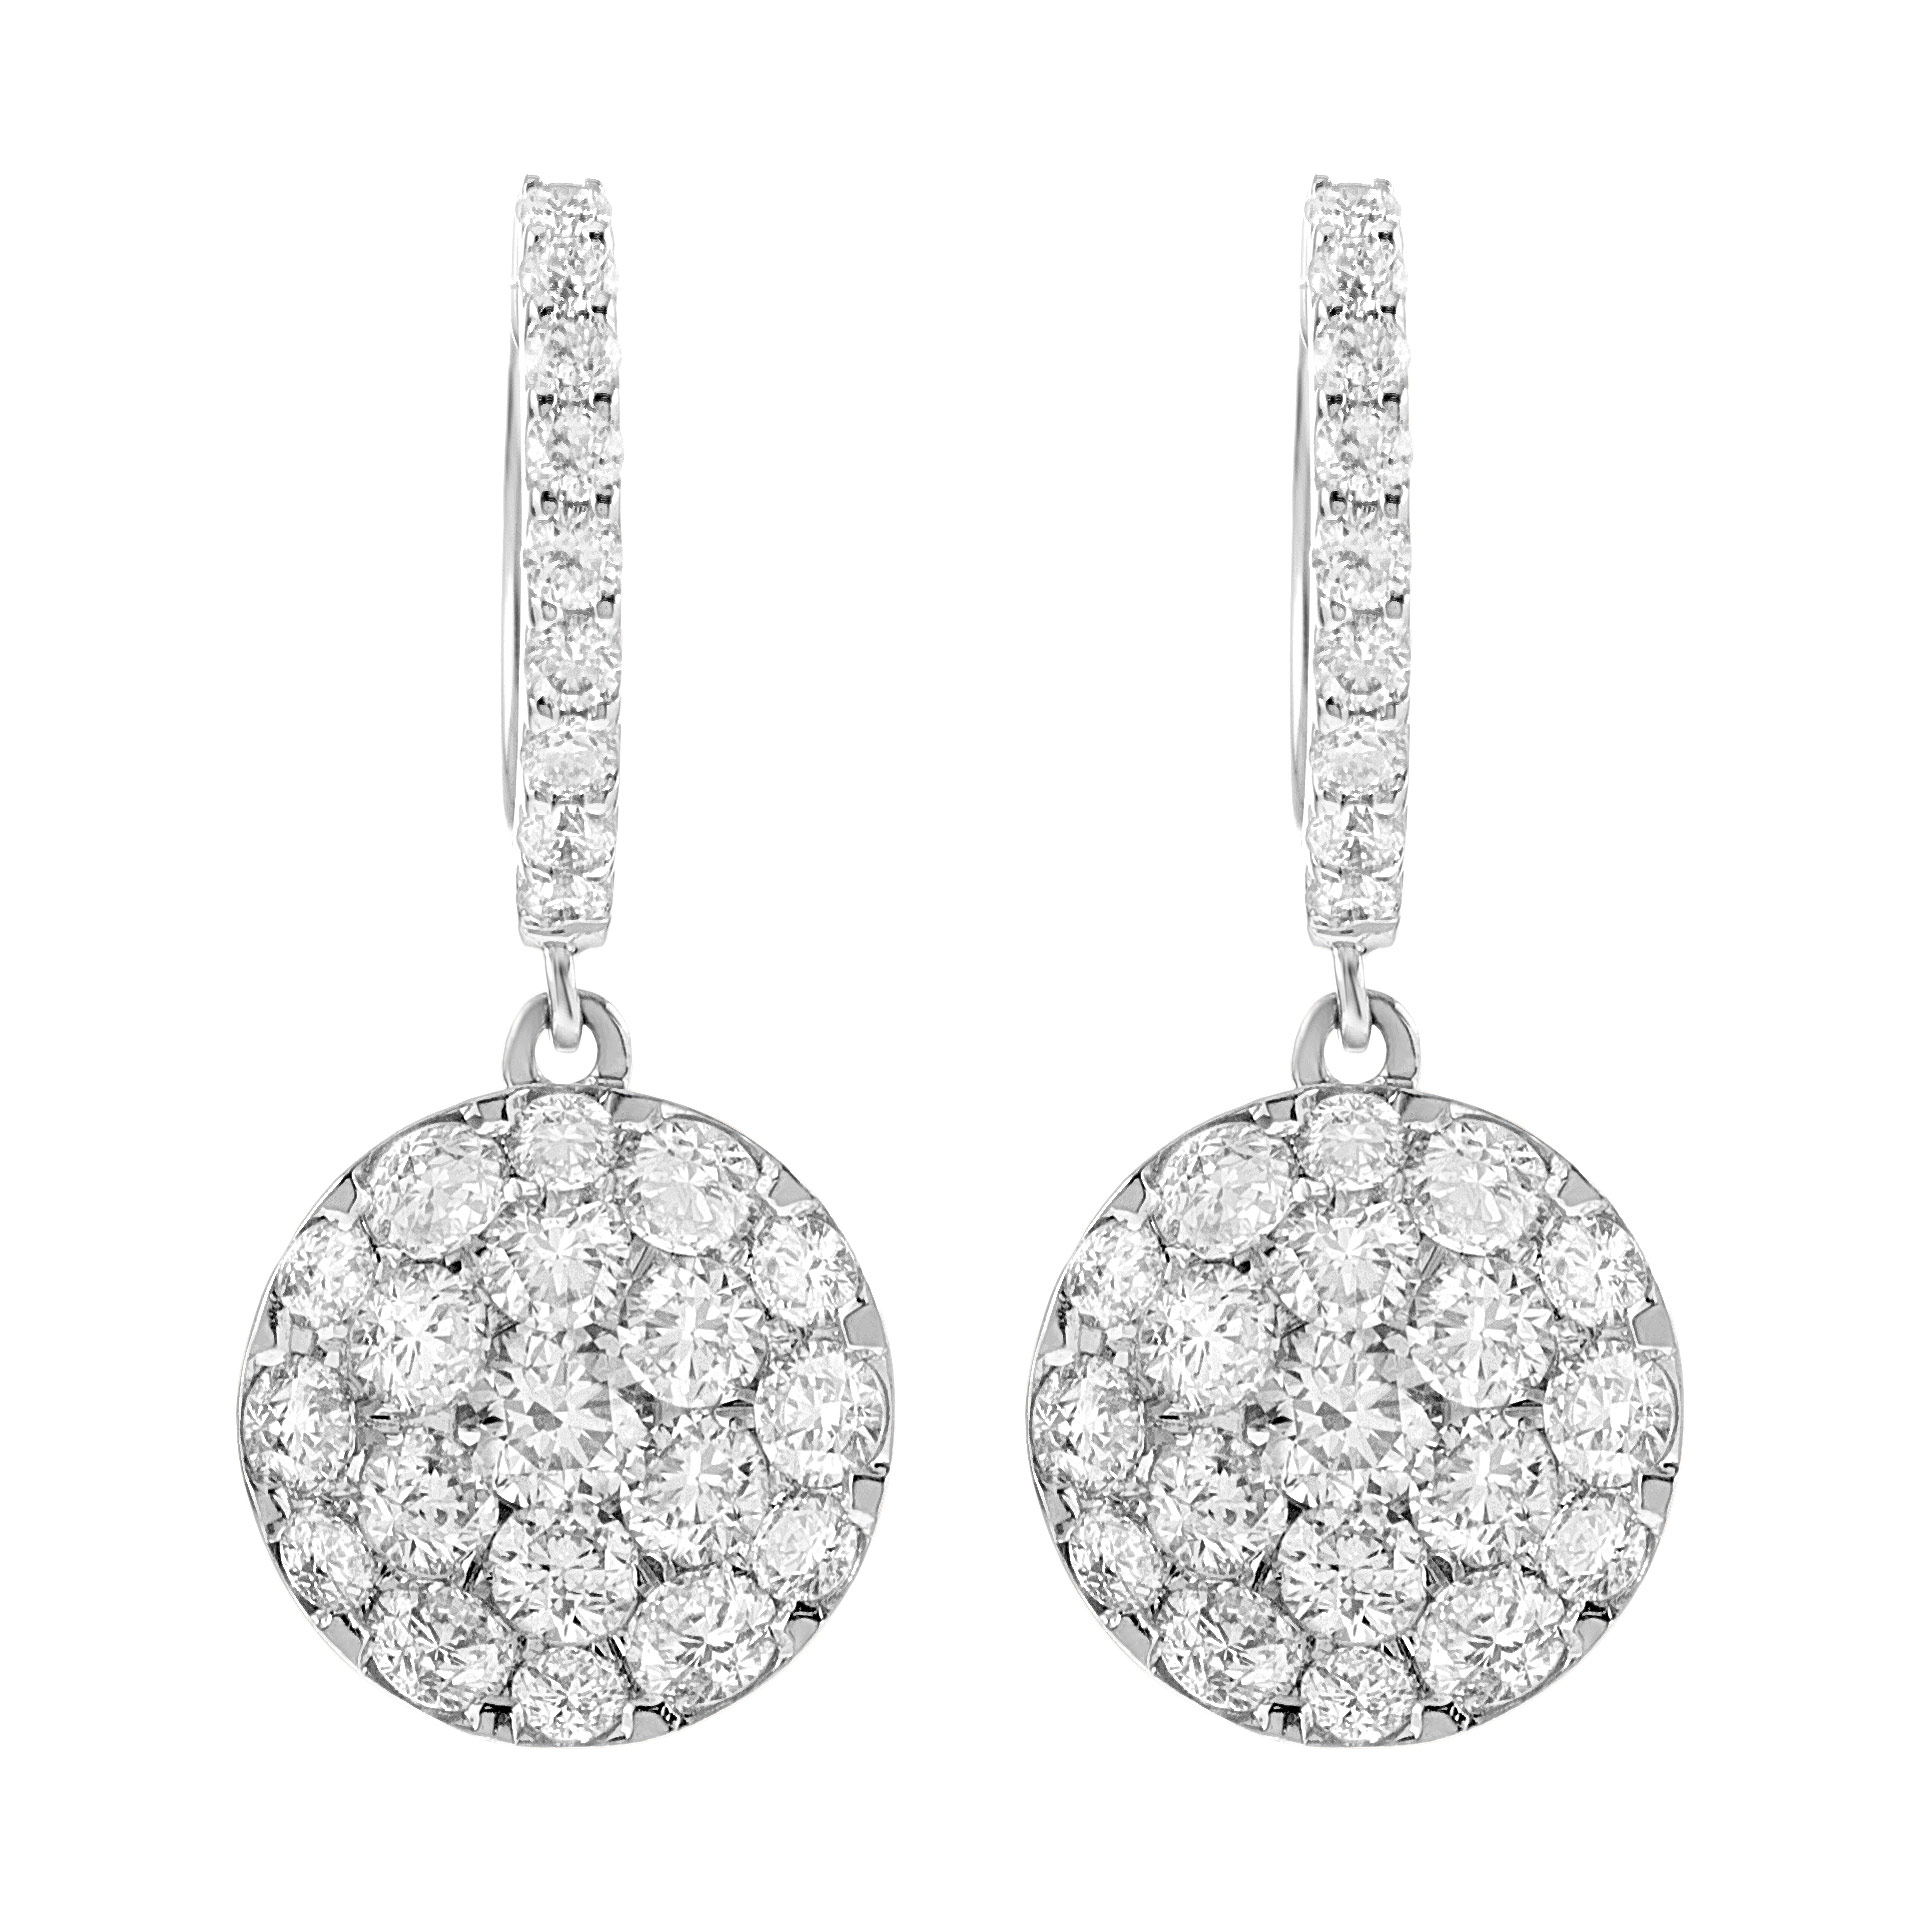 Diamond earrings in 18k white gold